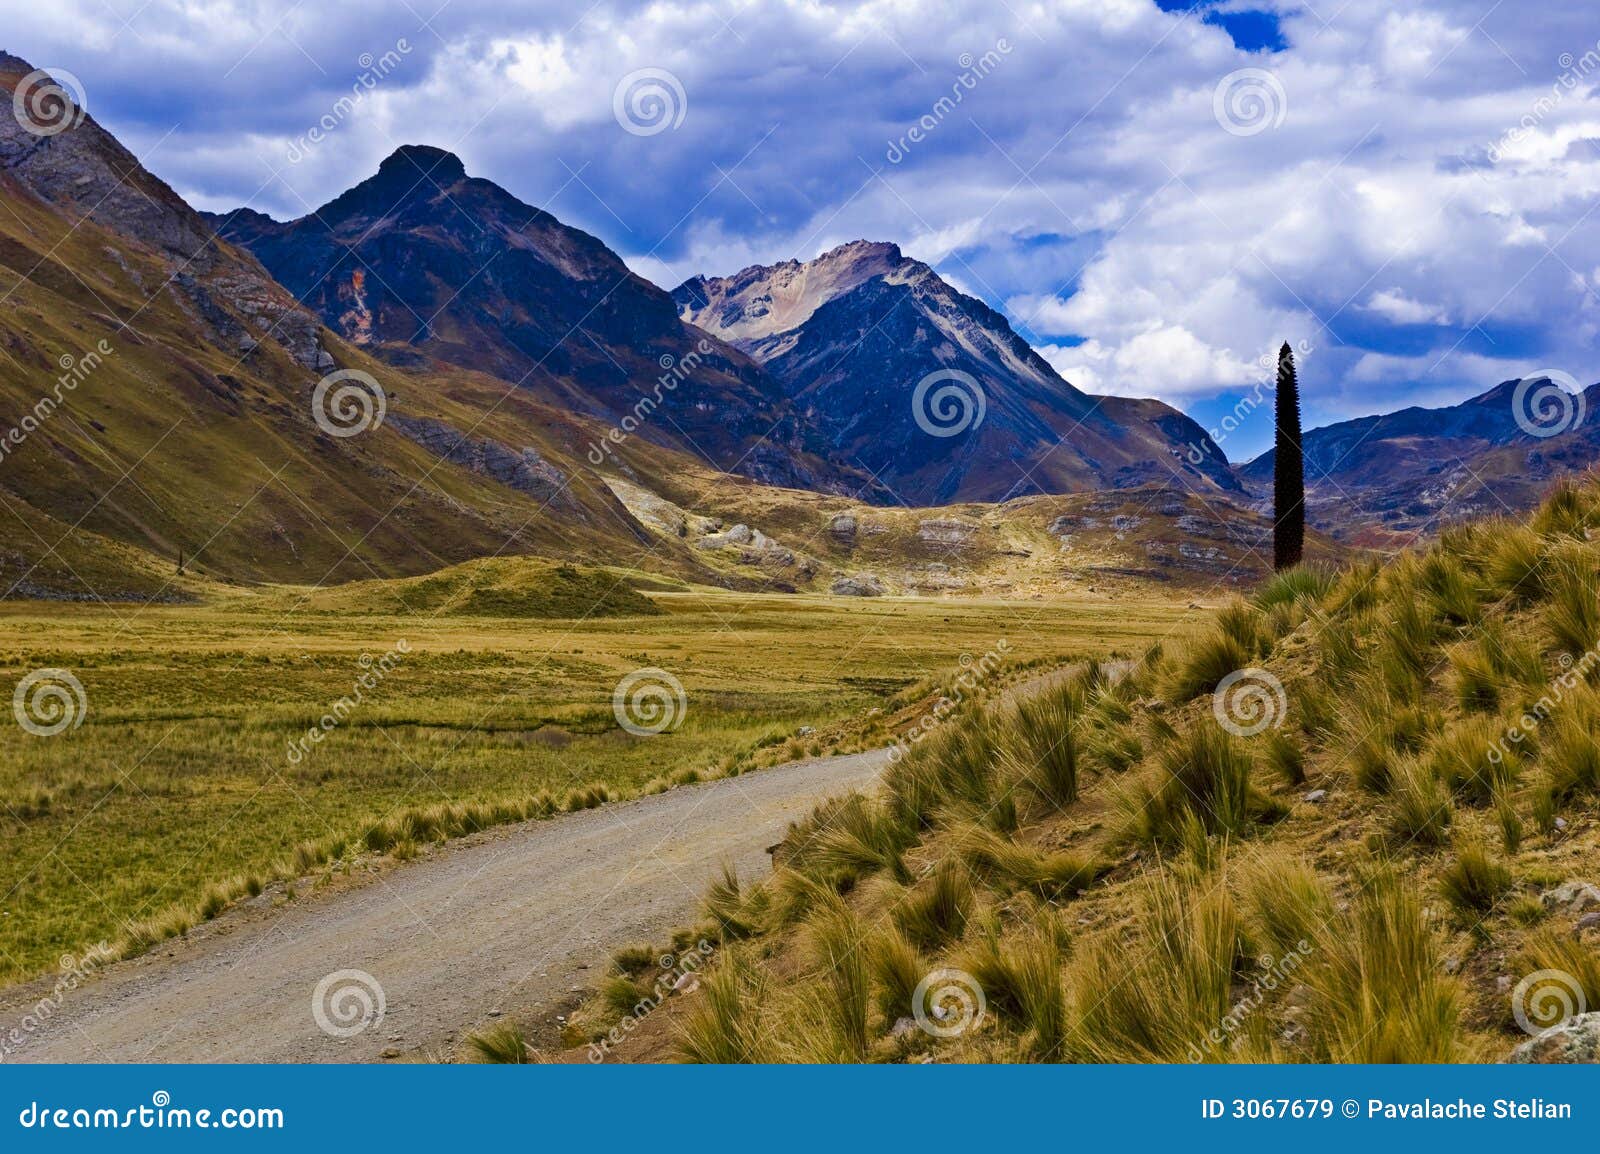 road in mountainous landscape